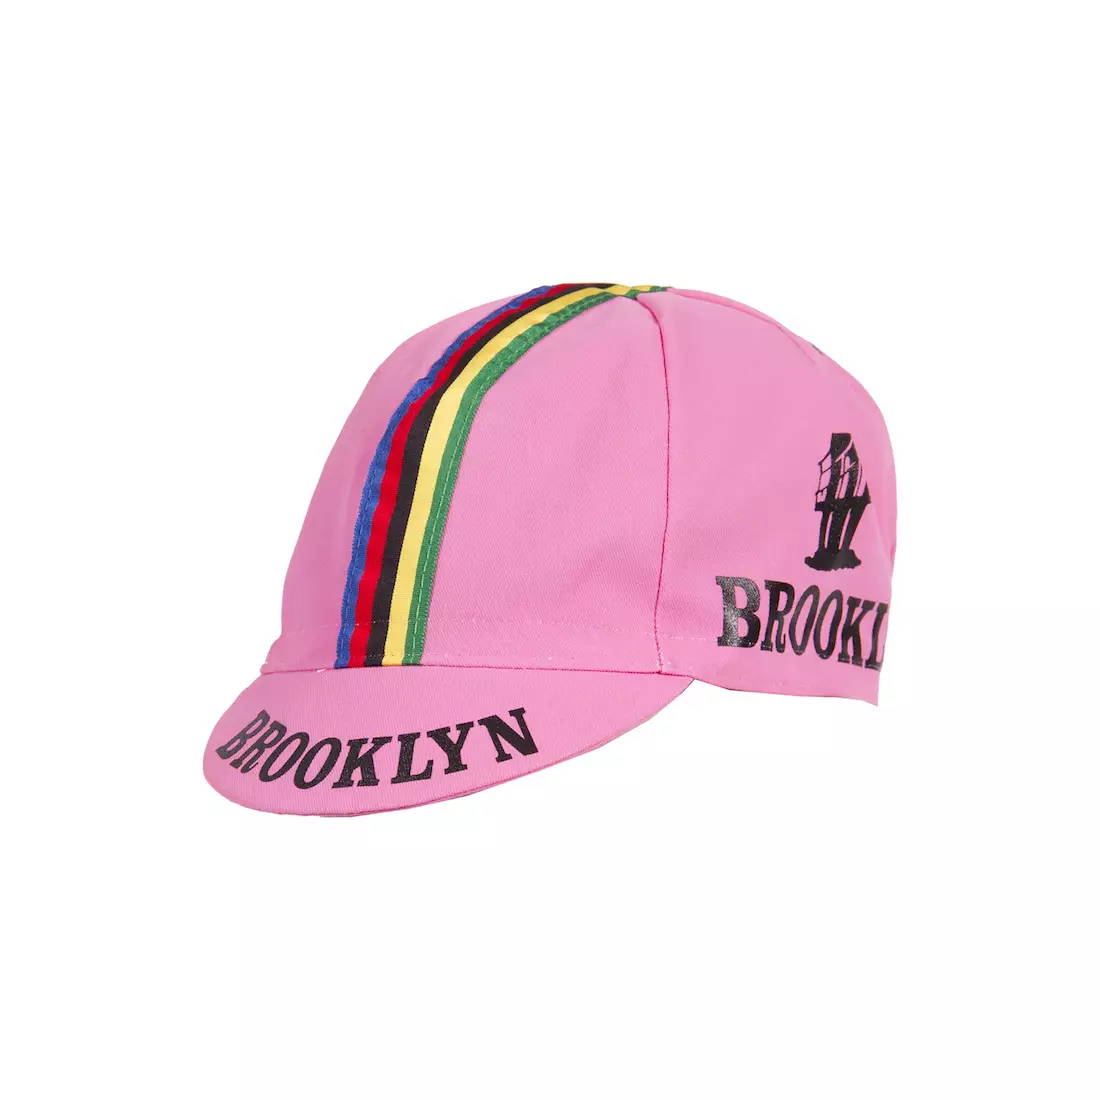 Cyklistická čepice GIORDANA SS18 - Brooklyn - Giro Pink s páskou GI-S6-COCA-BROK-GIRO jedna velikost